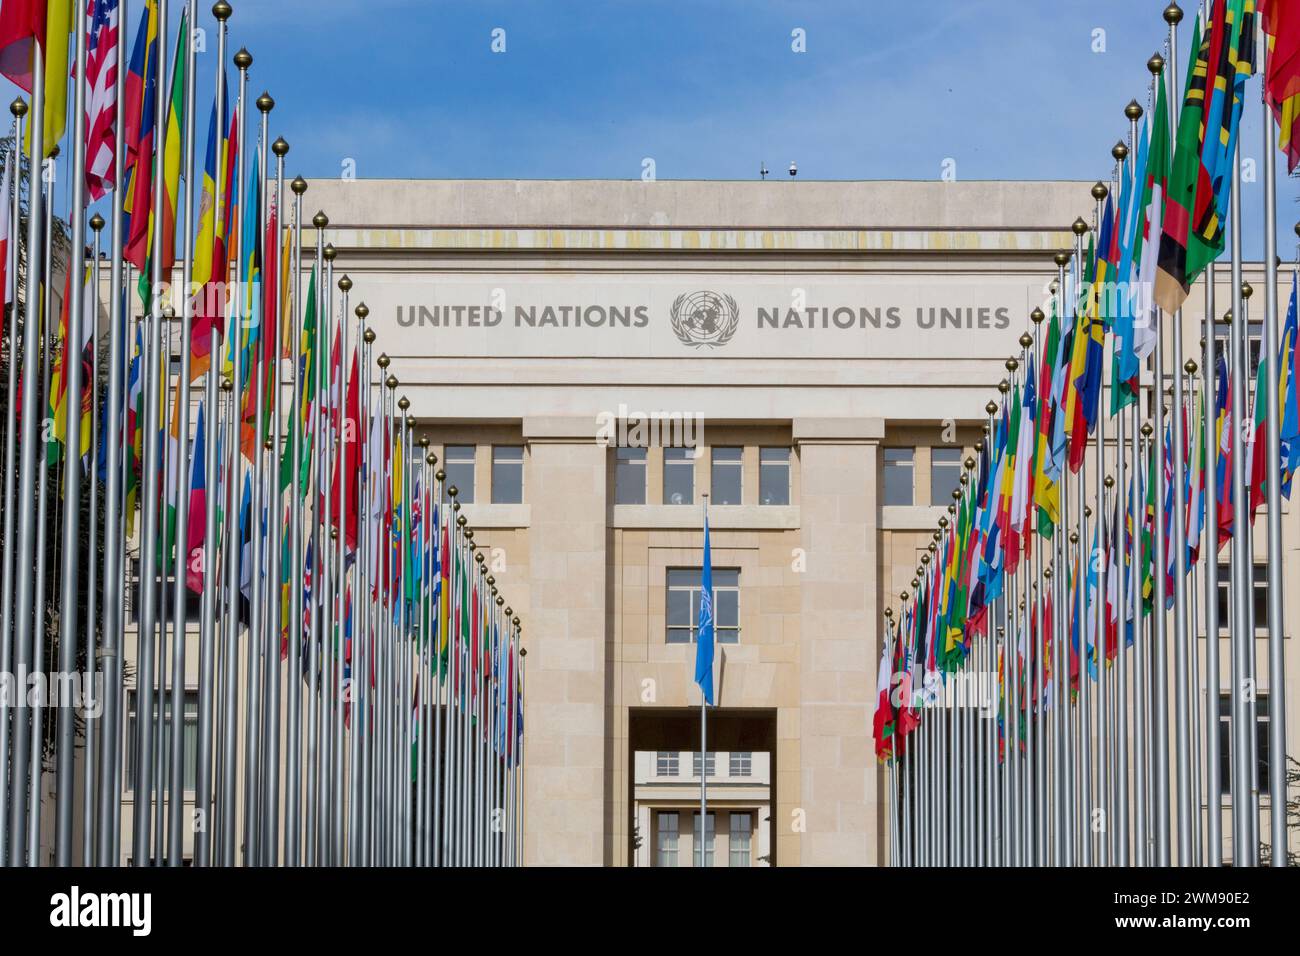 La sede delle Nazioni Unite a Ginevra. A causa dell'elevato costo dell'energia e della crisi di liquidità generale, molti dei piani e degli impianti degli uffici della sede centrale sono chiusi per risparmiare sulle spese. Anche il riscaldamento è abbassato e le luci spente in molte camere. Foto Stock